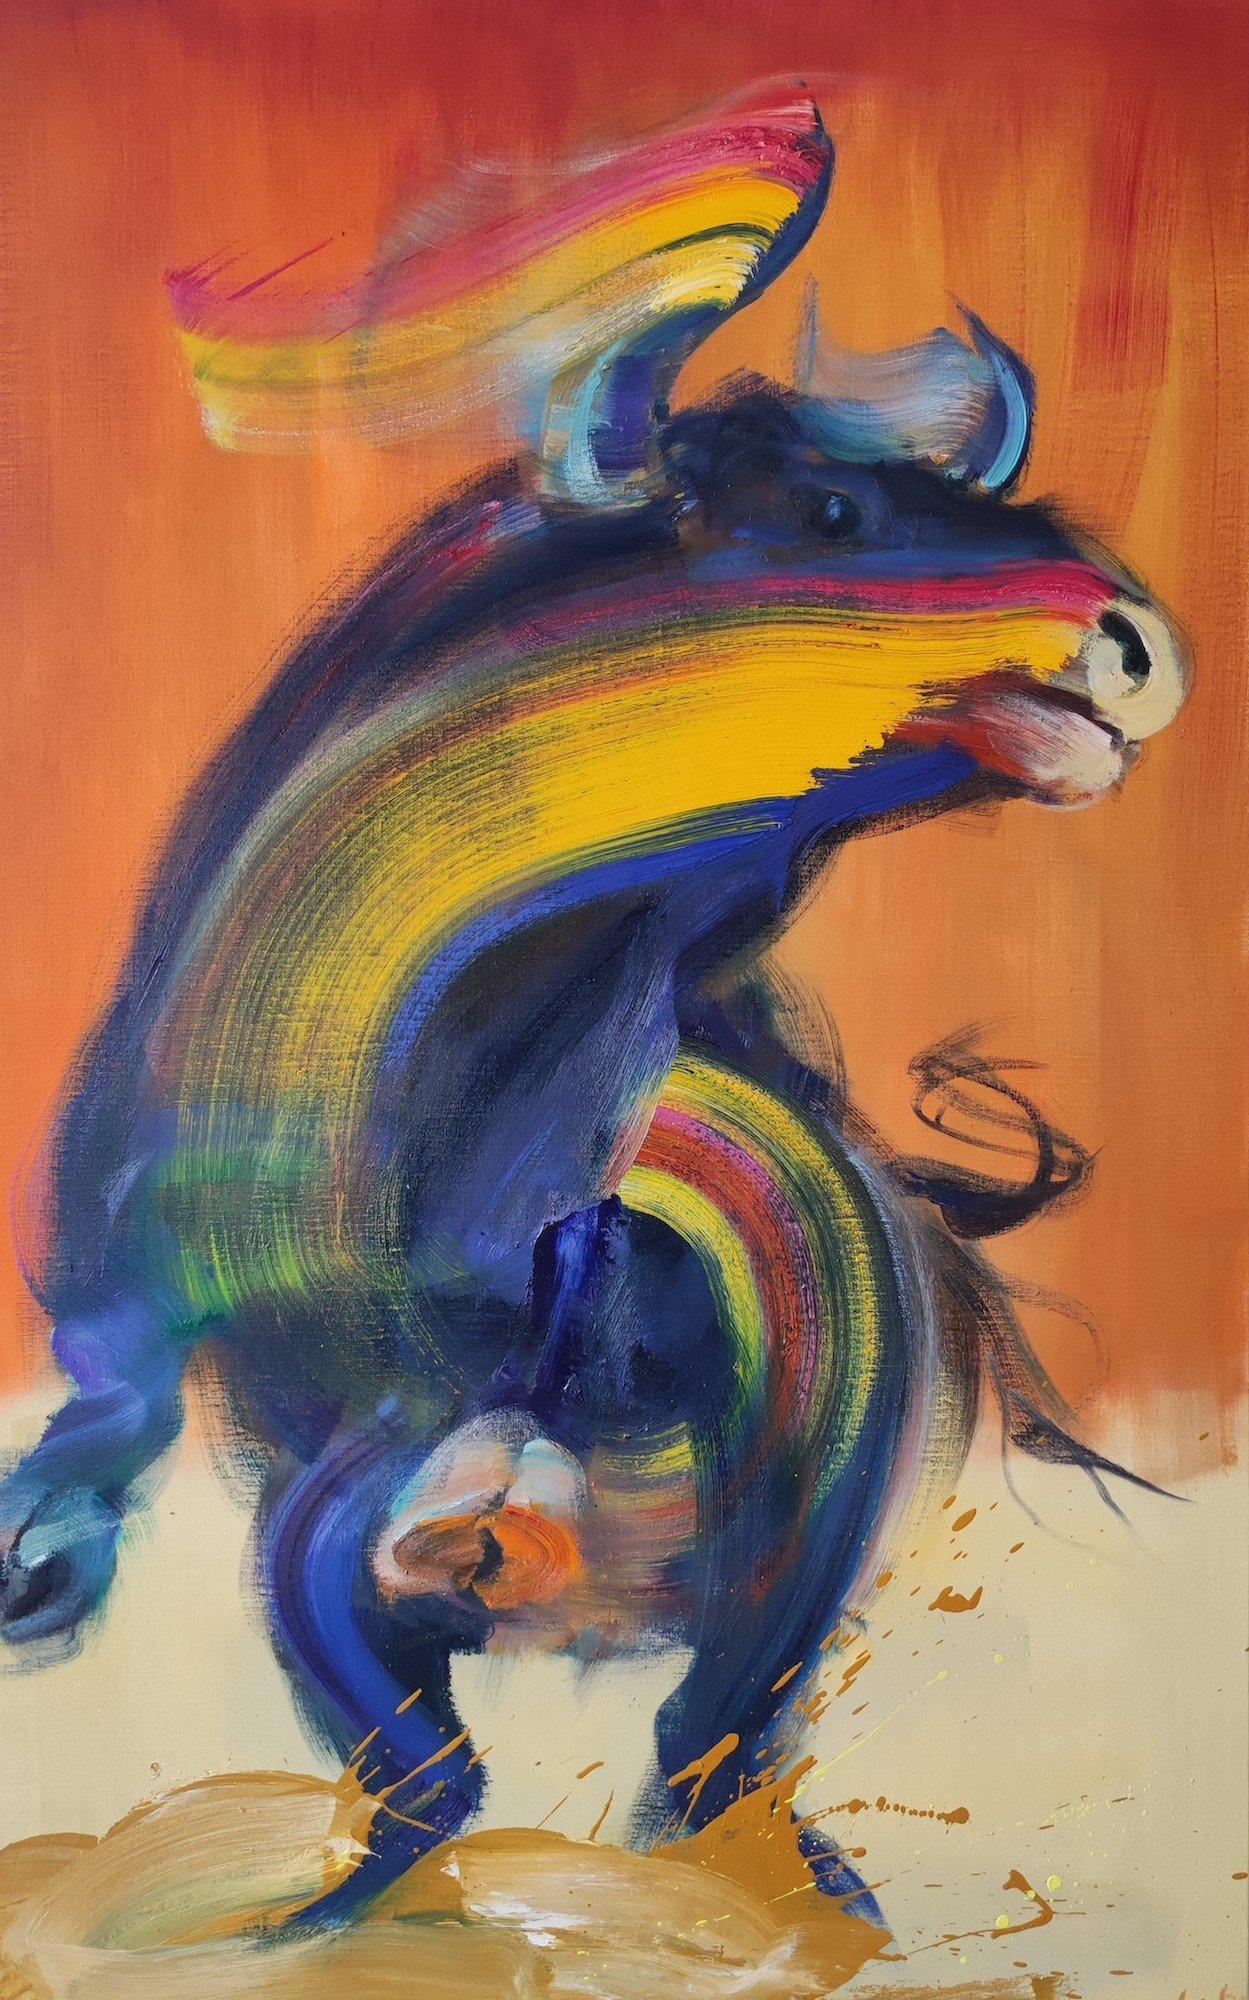 Murcielago (2023) de l'artiste contemporain français Christophe Dupety. Huile sur toile, H 130 x L 81 cm // 51.2 in x 31.9 in.
Avec cette série, l'artiste aborde le thème de la corrida. Mais plutôt que de dépeindre la confrontation entre l'homme et